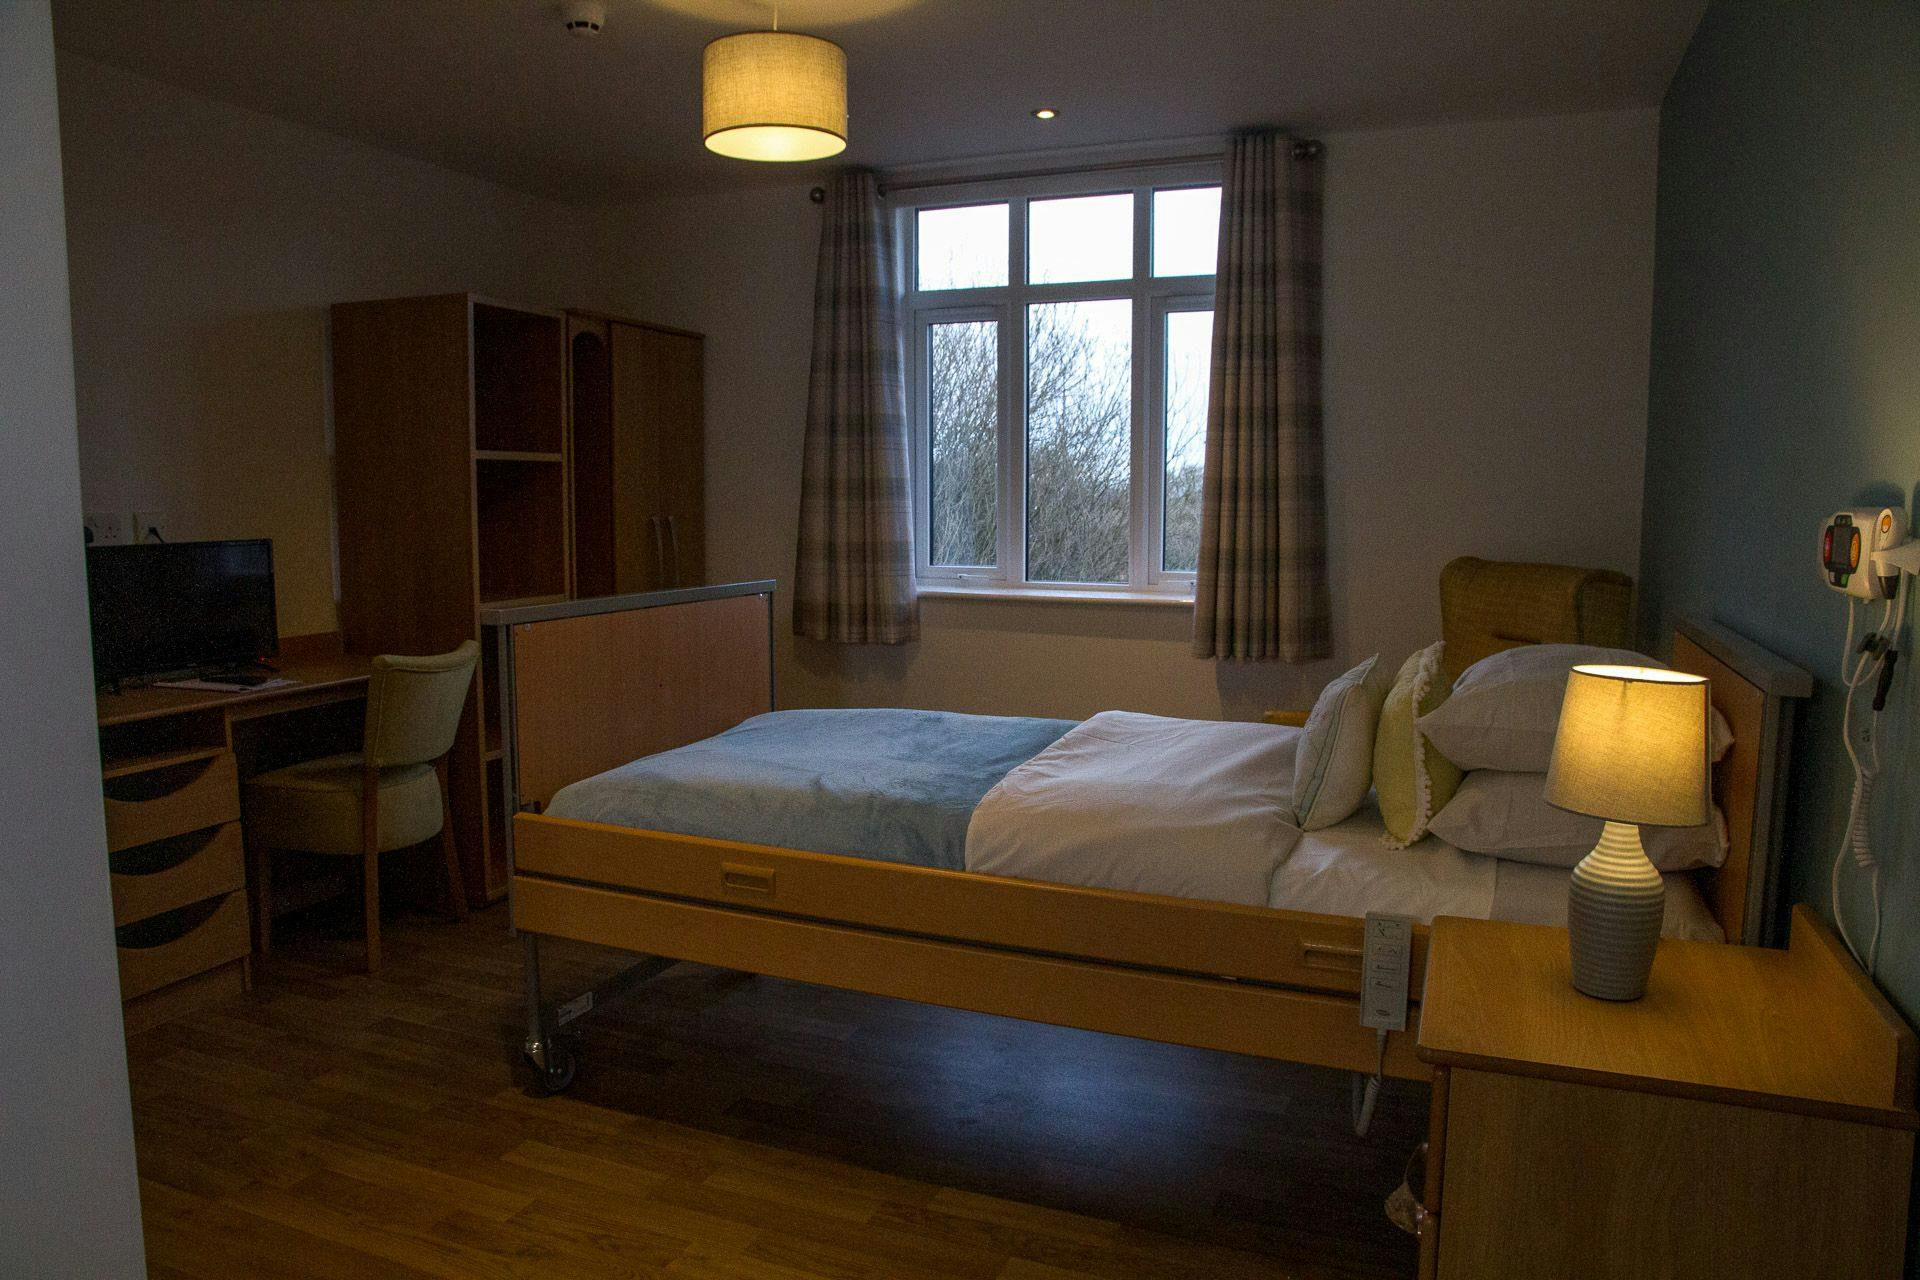 Bedroom of Bispham Garden care home in Blackpool, Lancashire